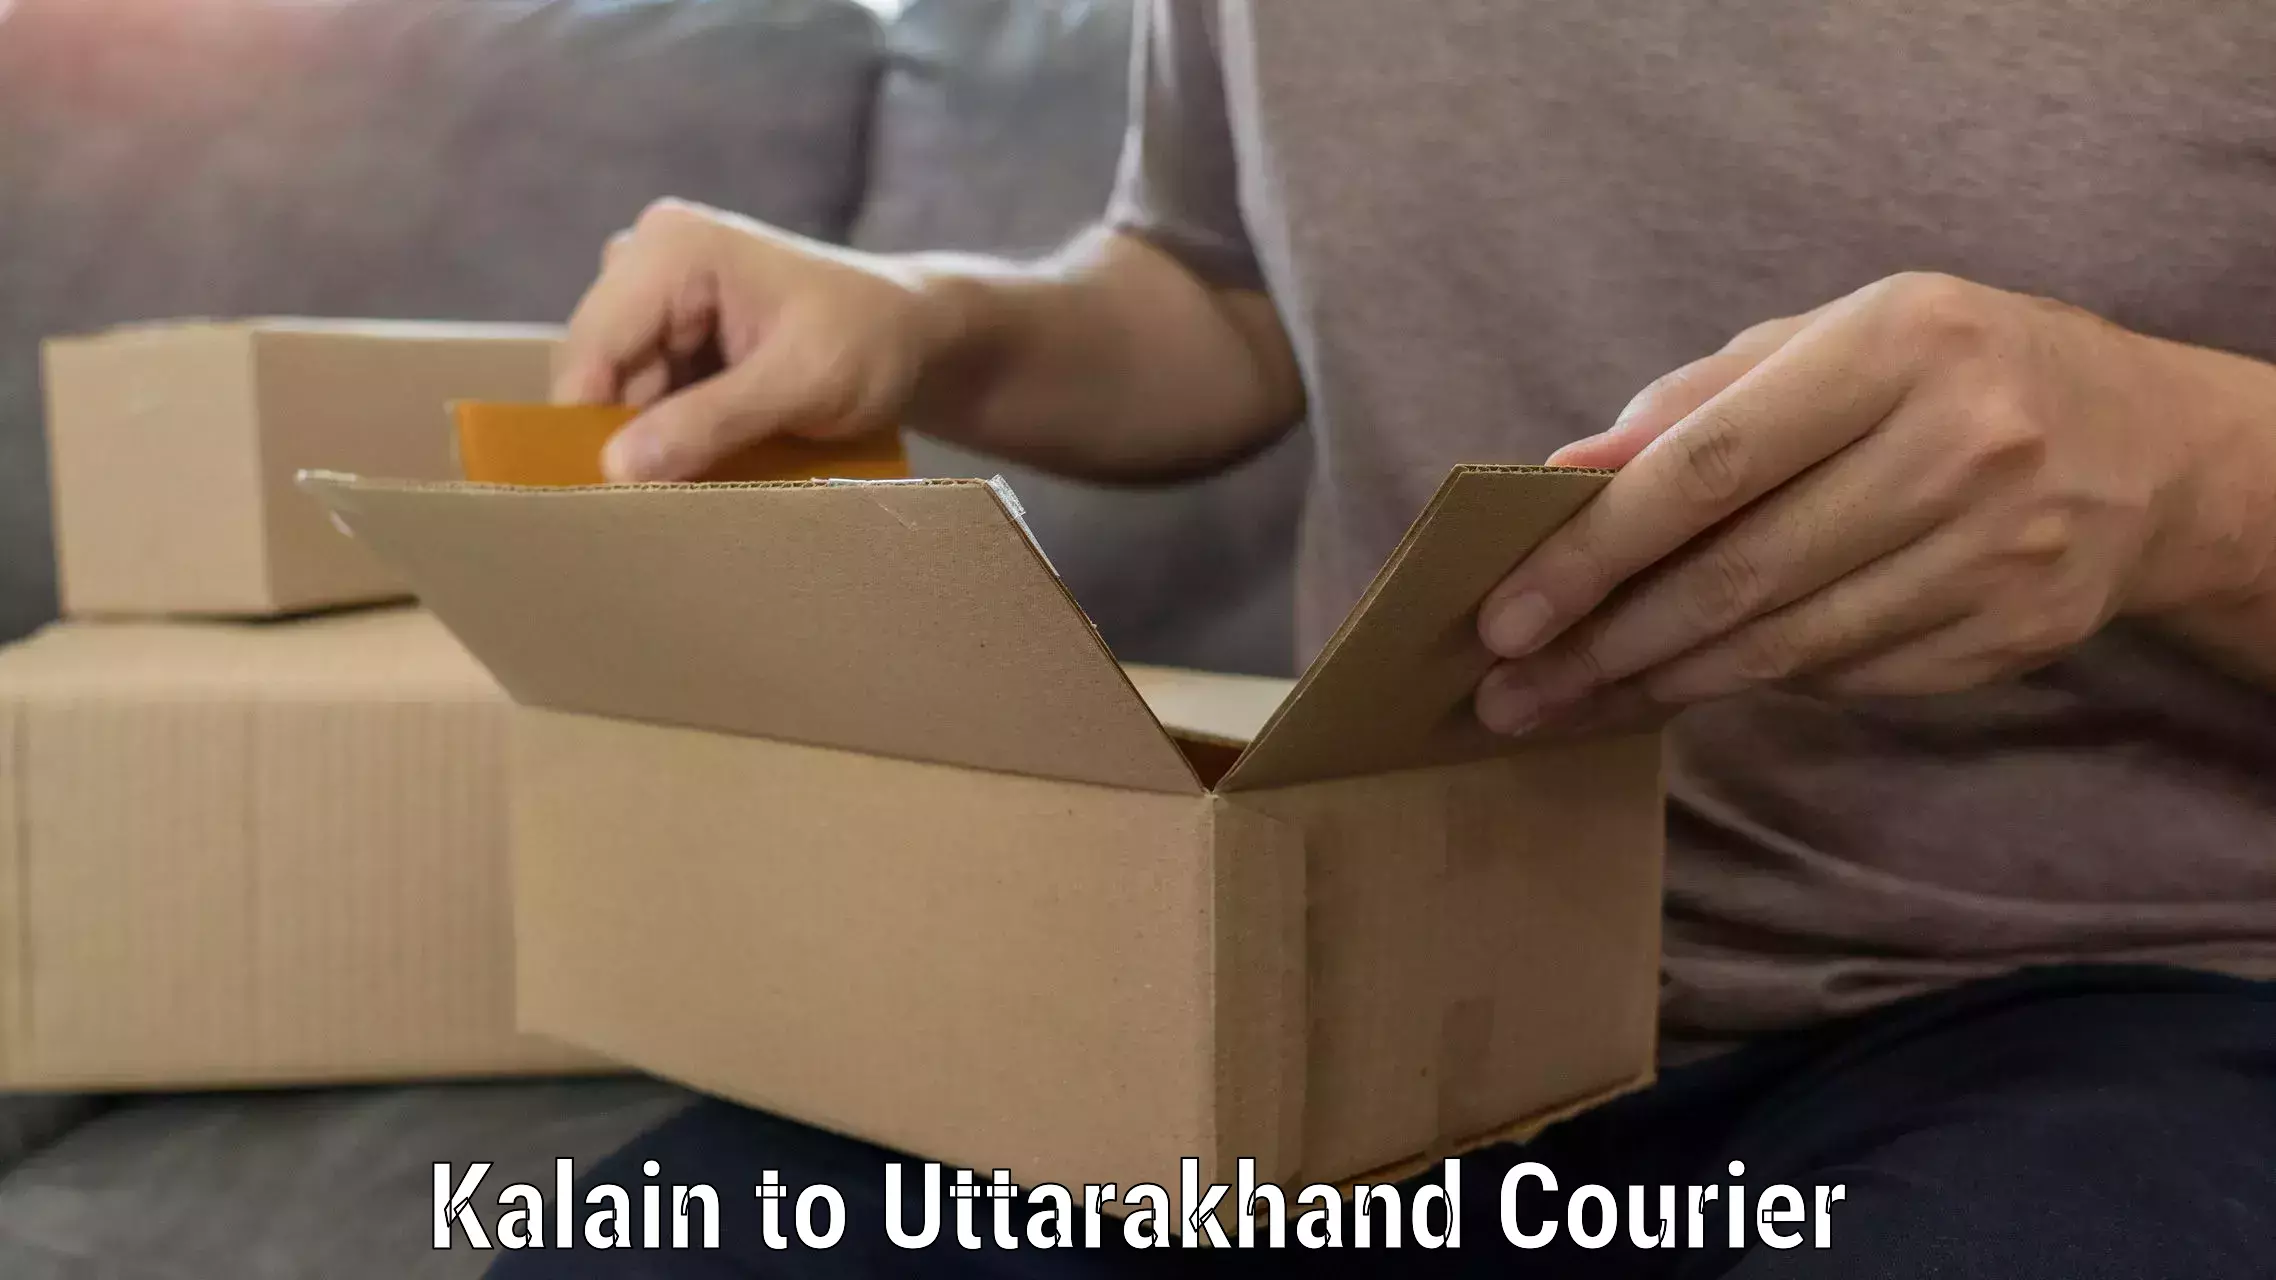 Specialized moving company Kalain to Uttarakhand